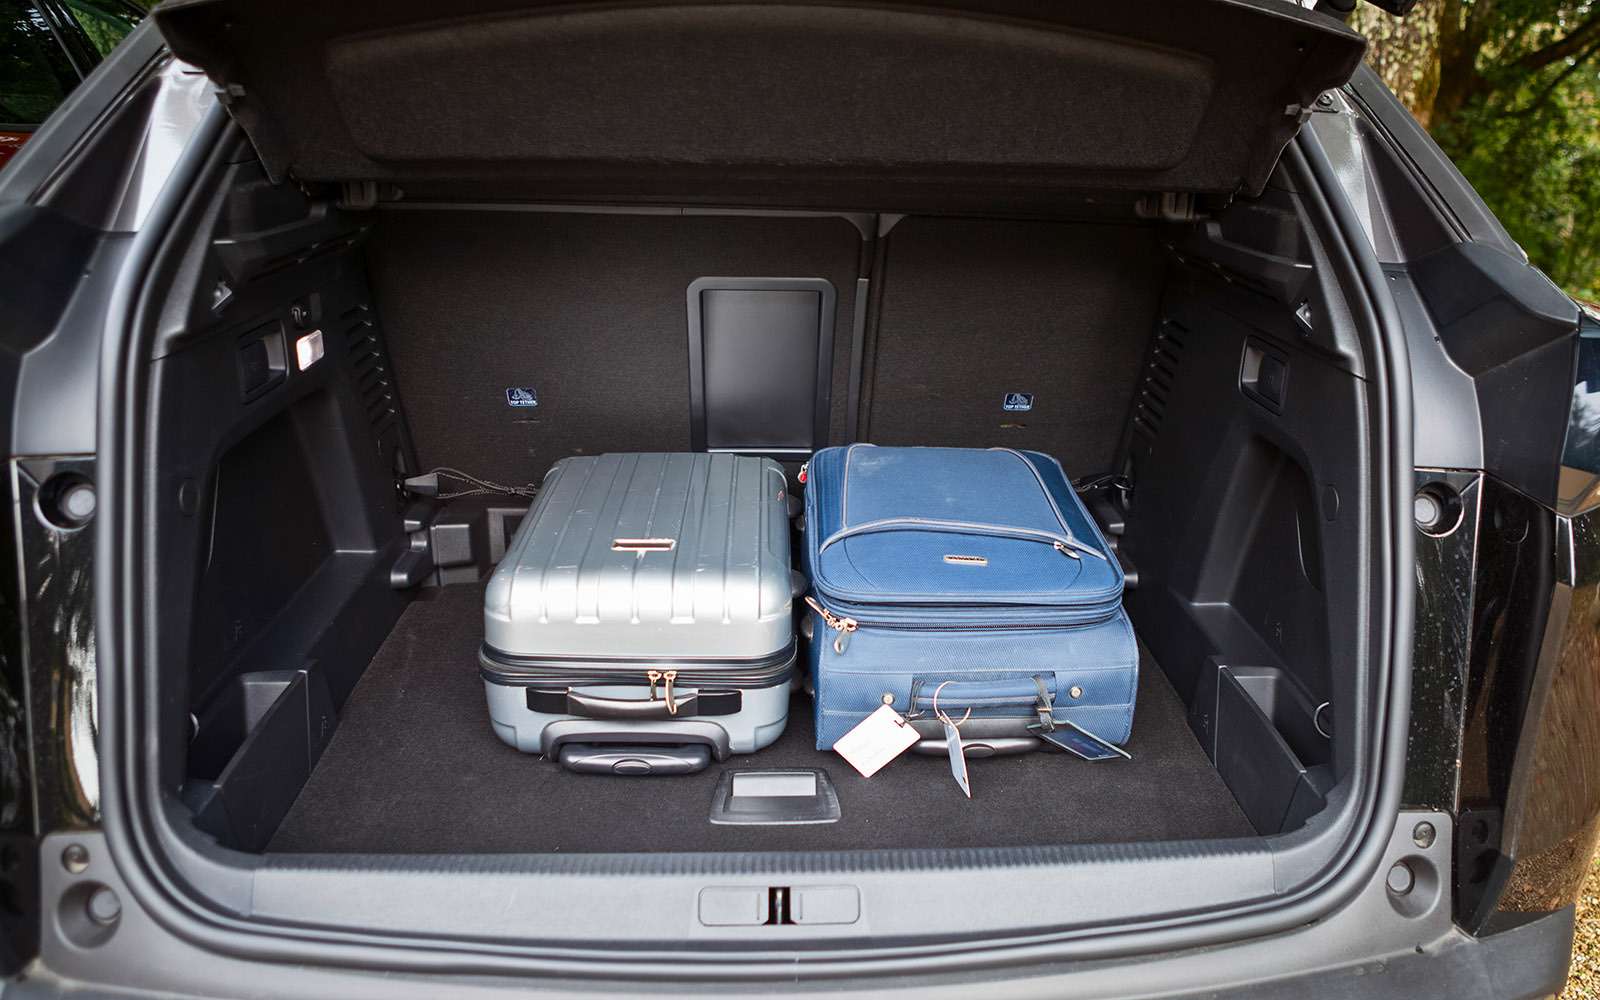 Заявленный объем багажника, который мерили по методике VDA, – 591 литр. Наша методика даст, скорее всего, более скромный результат, но факт остается фактом: места много!